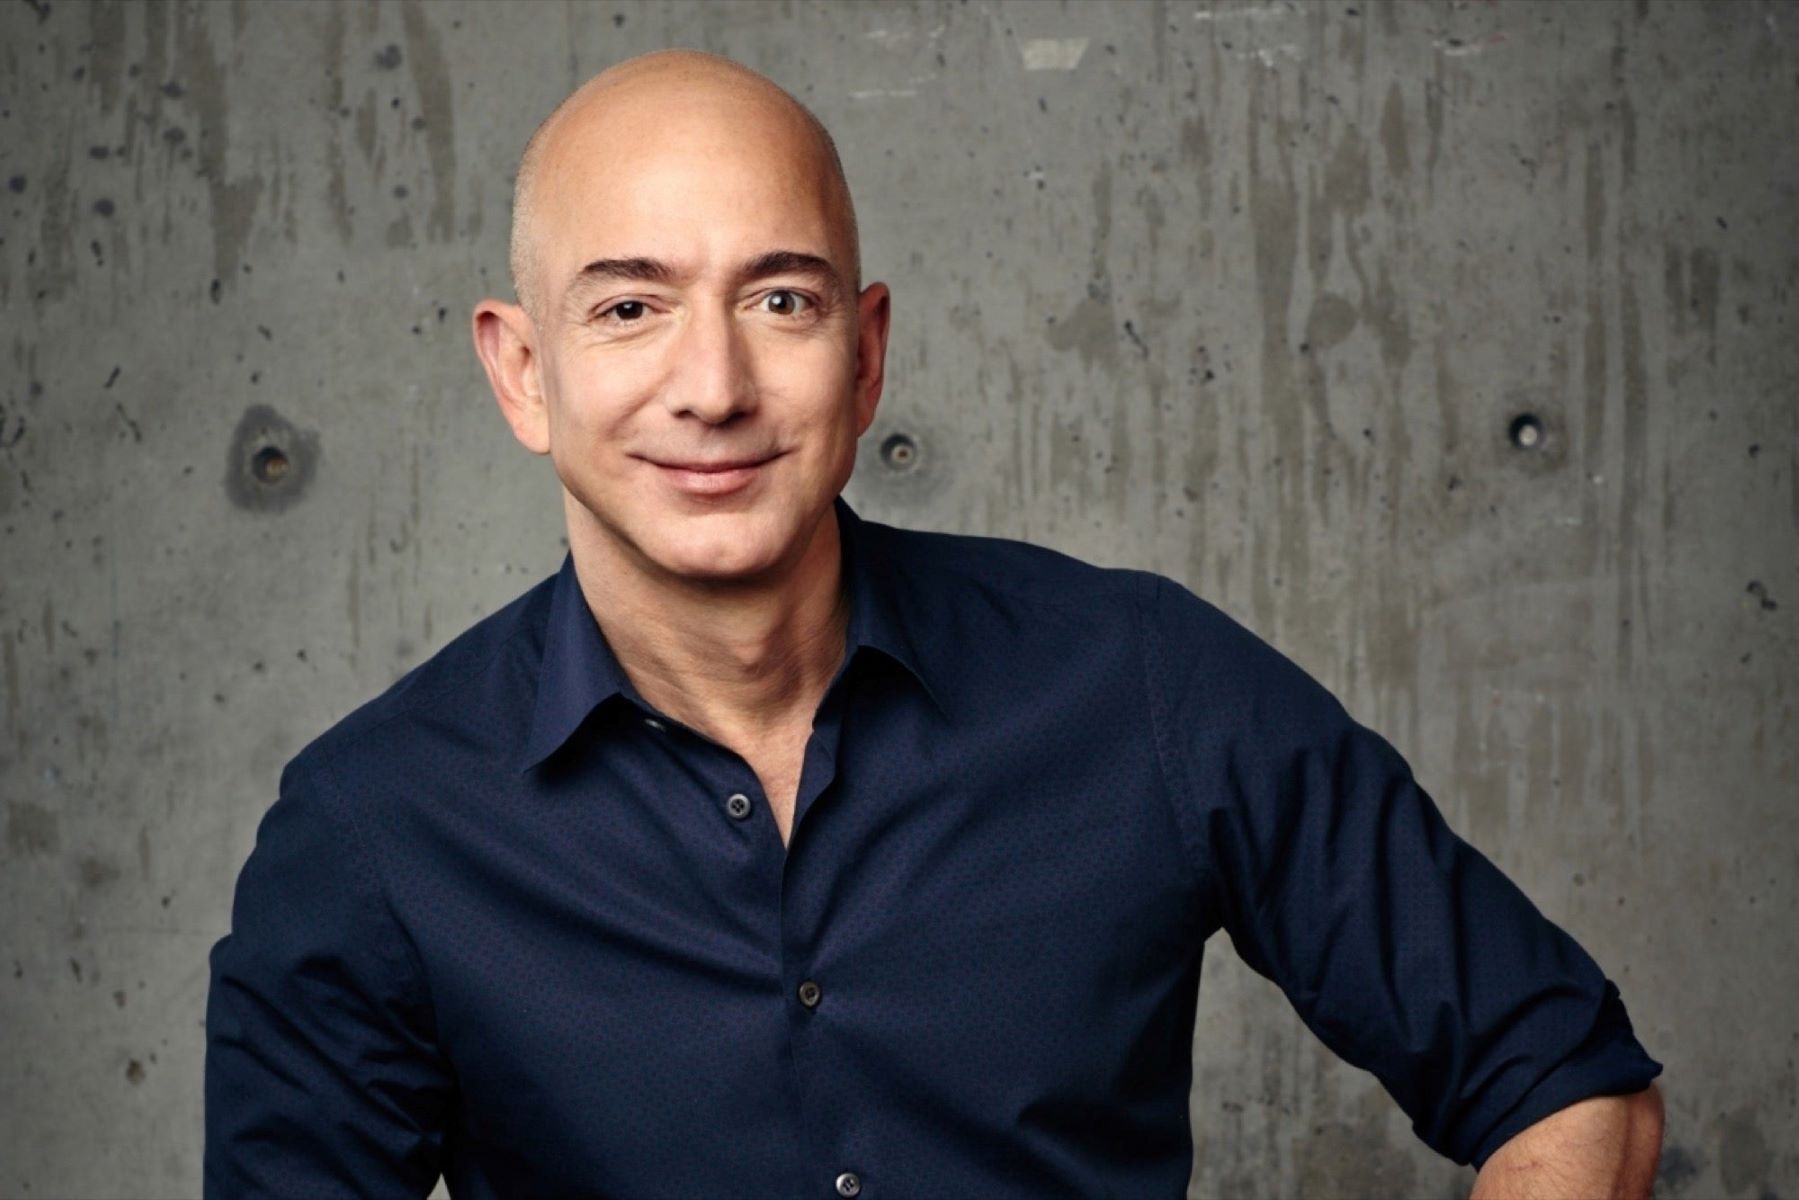 Shocking Revelation: Jeff Bezos' Jewish Heritage Exposed!